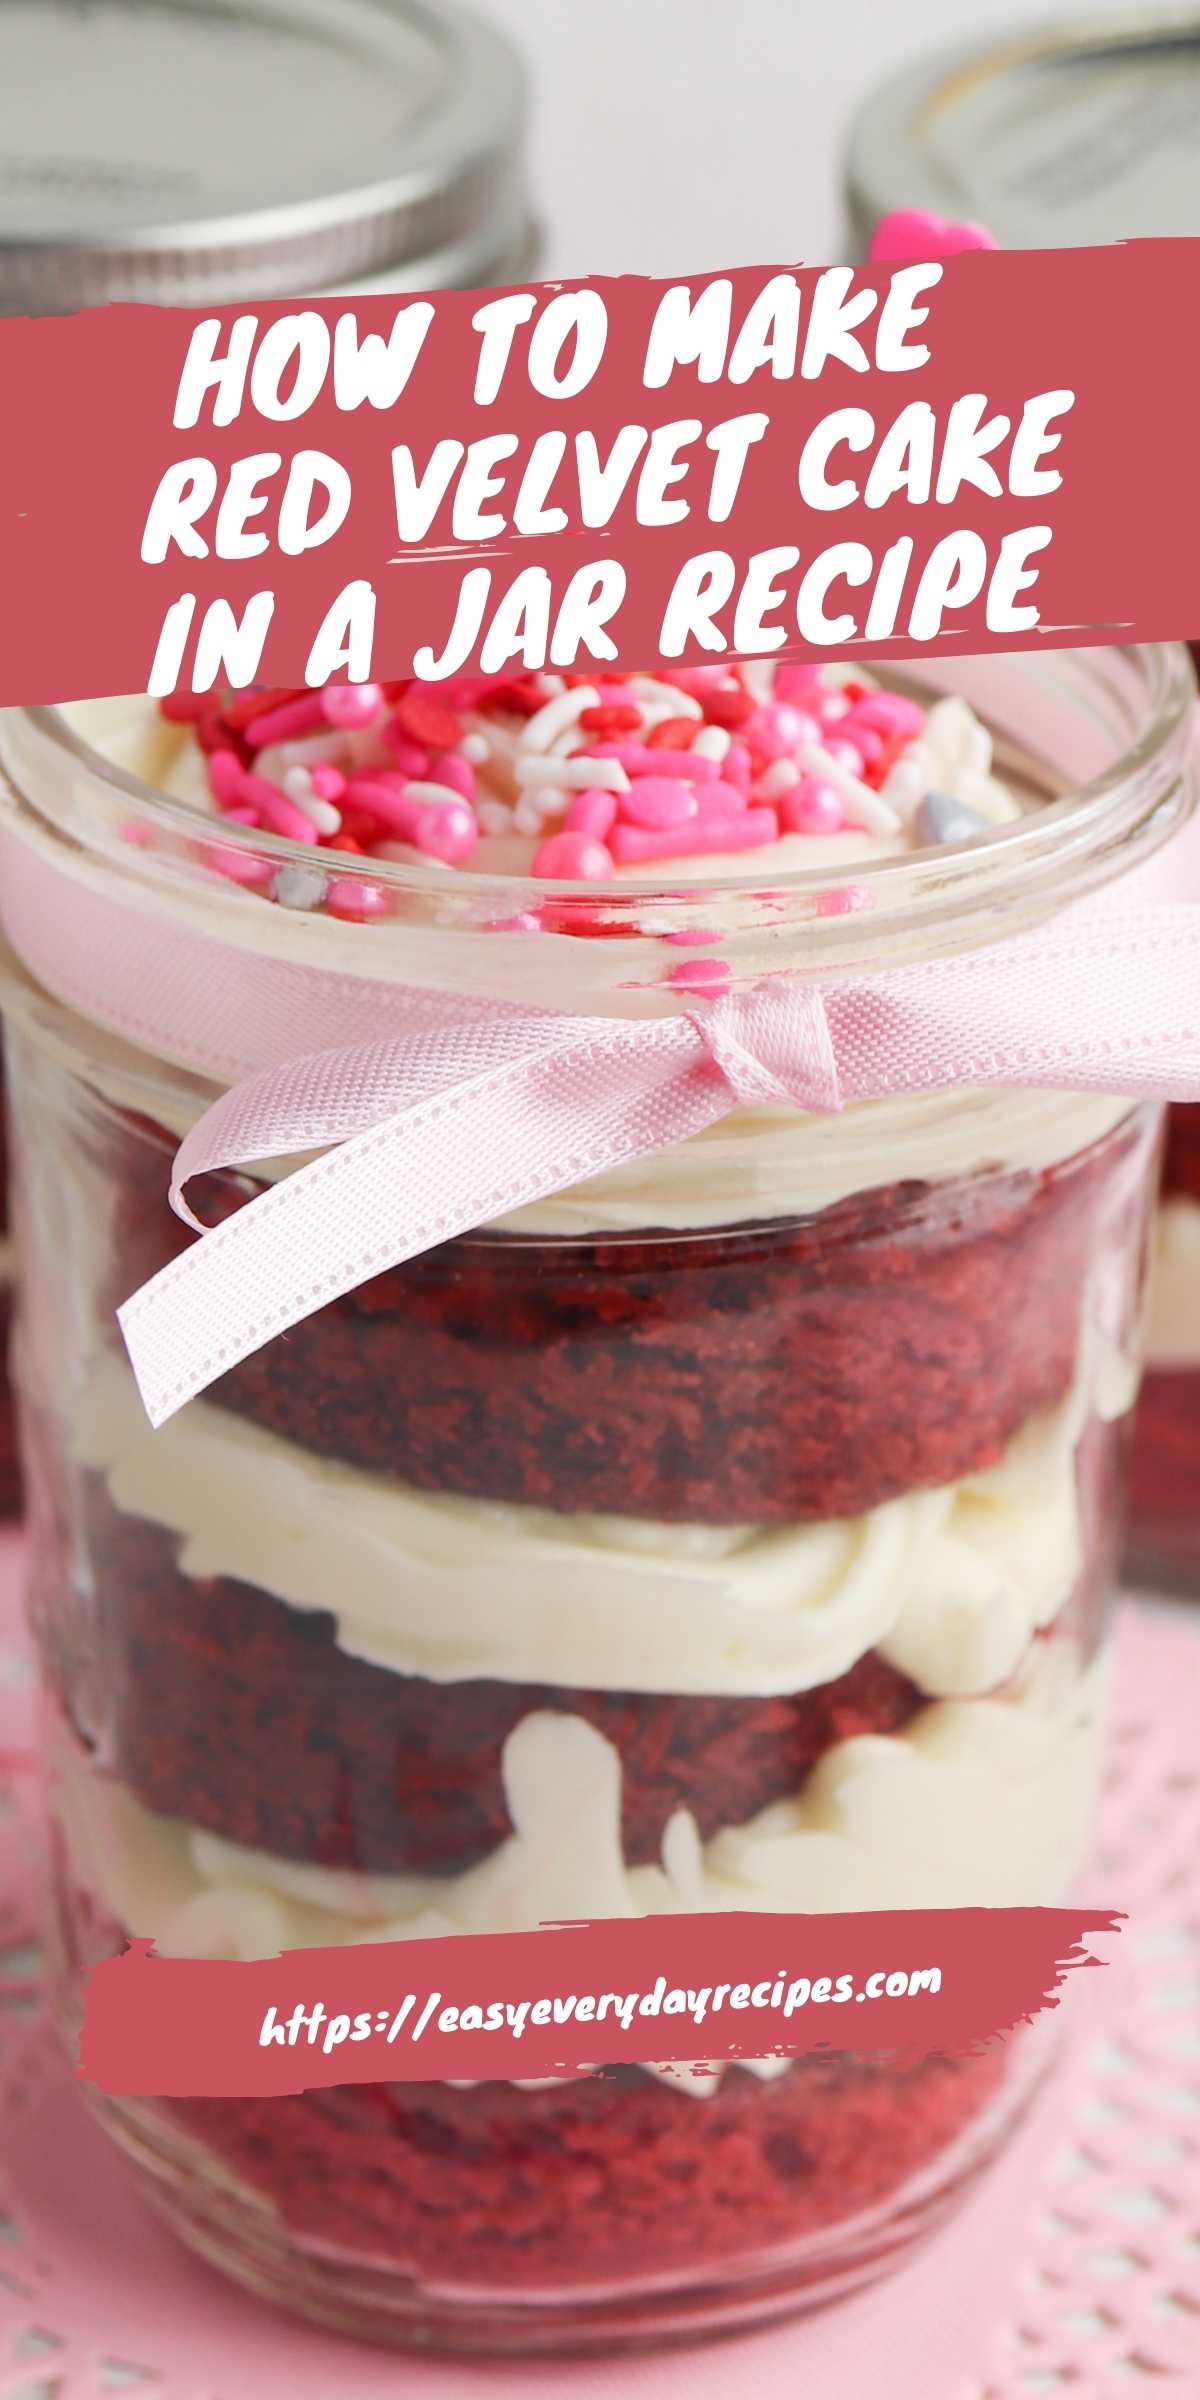 Red Velvet Cake In a Jar Recipe 